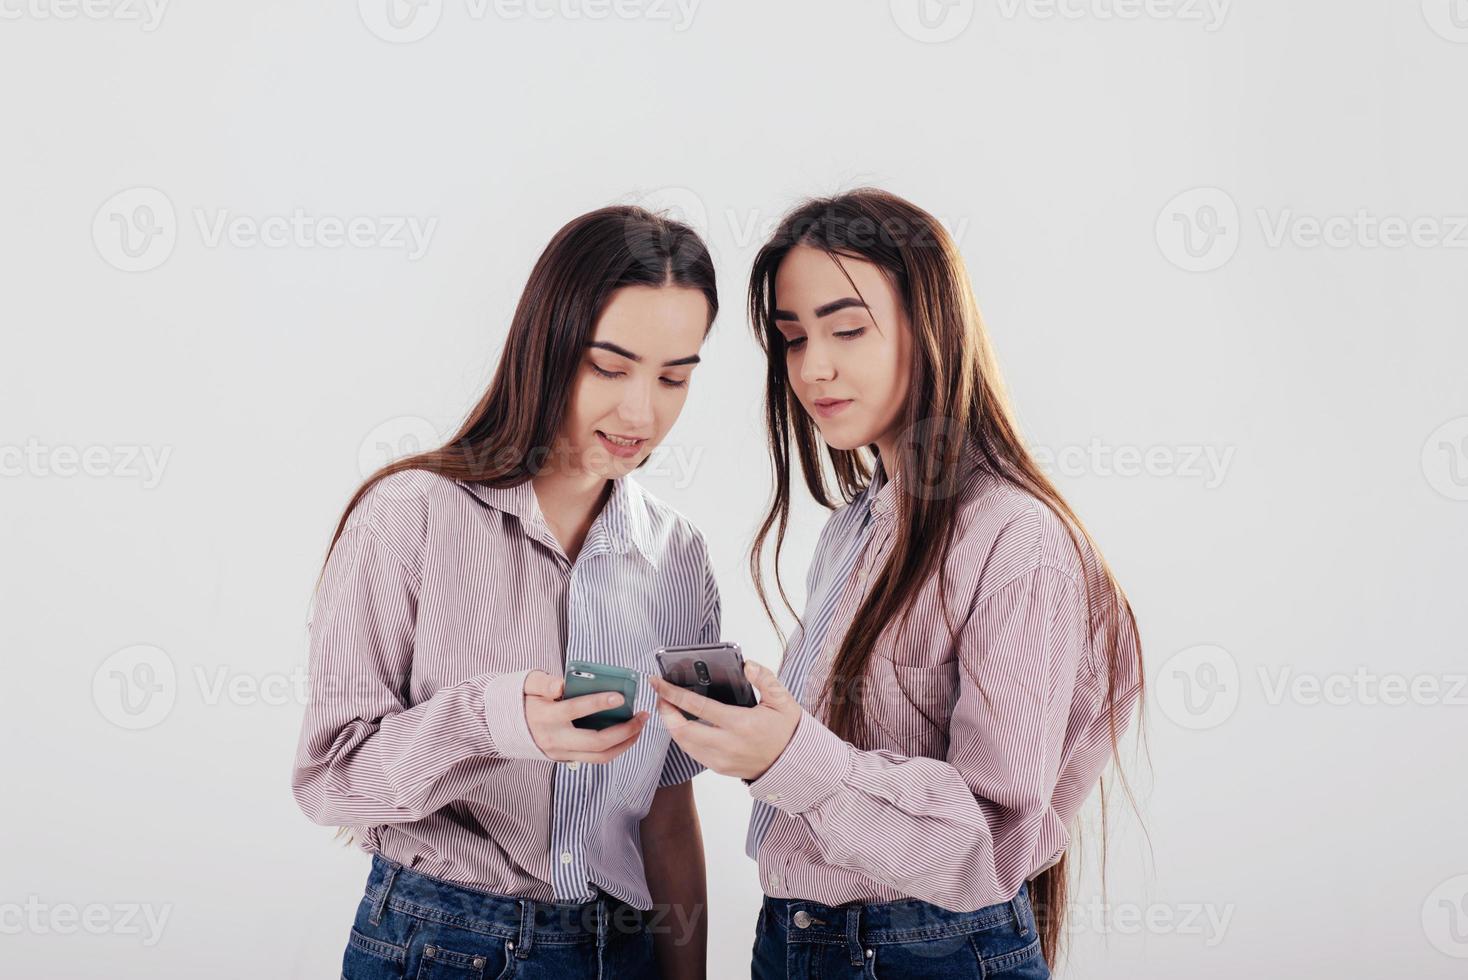 condivisione di alcune informazioni tramite smartphone. due sorelle gemelle in piedi e in posa in studio con sfondo bianco foto